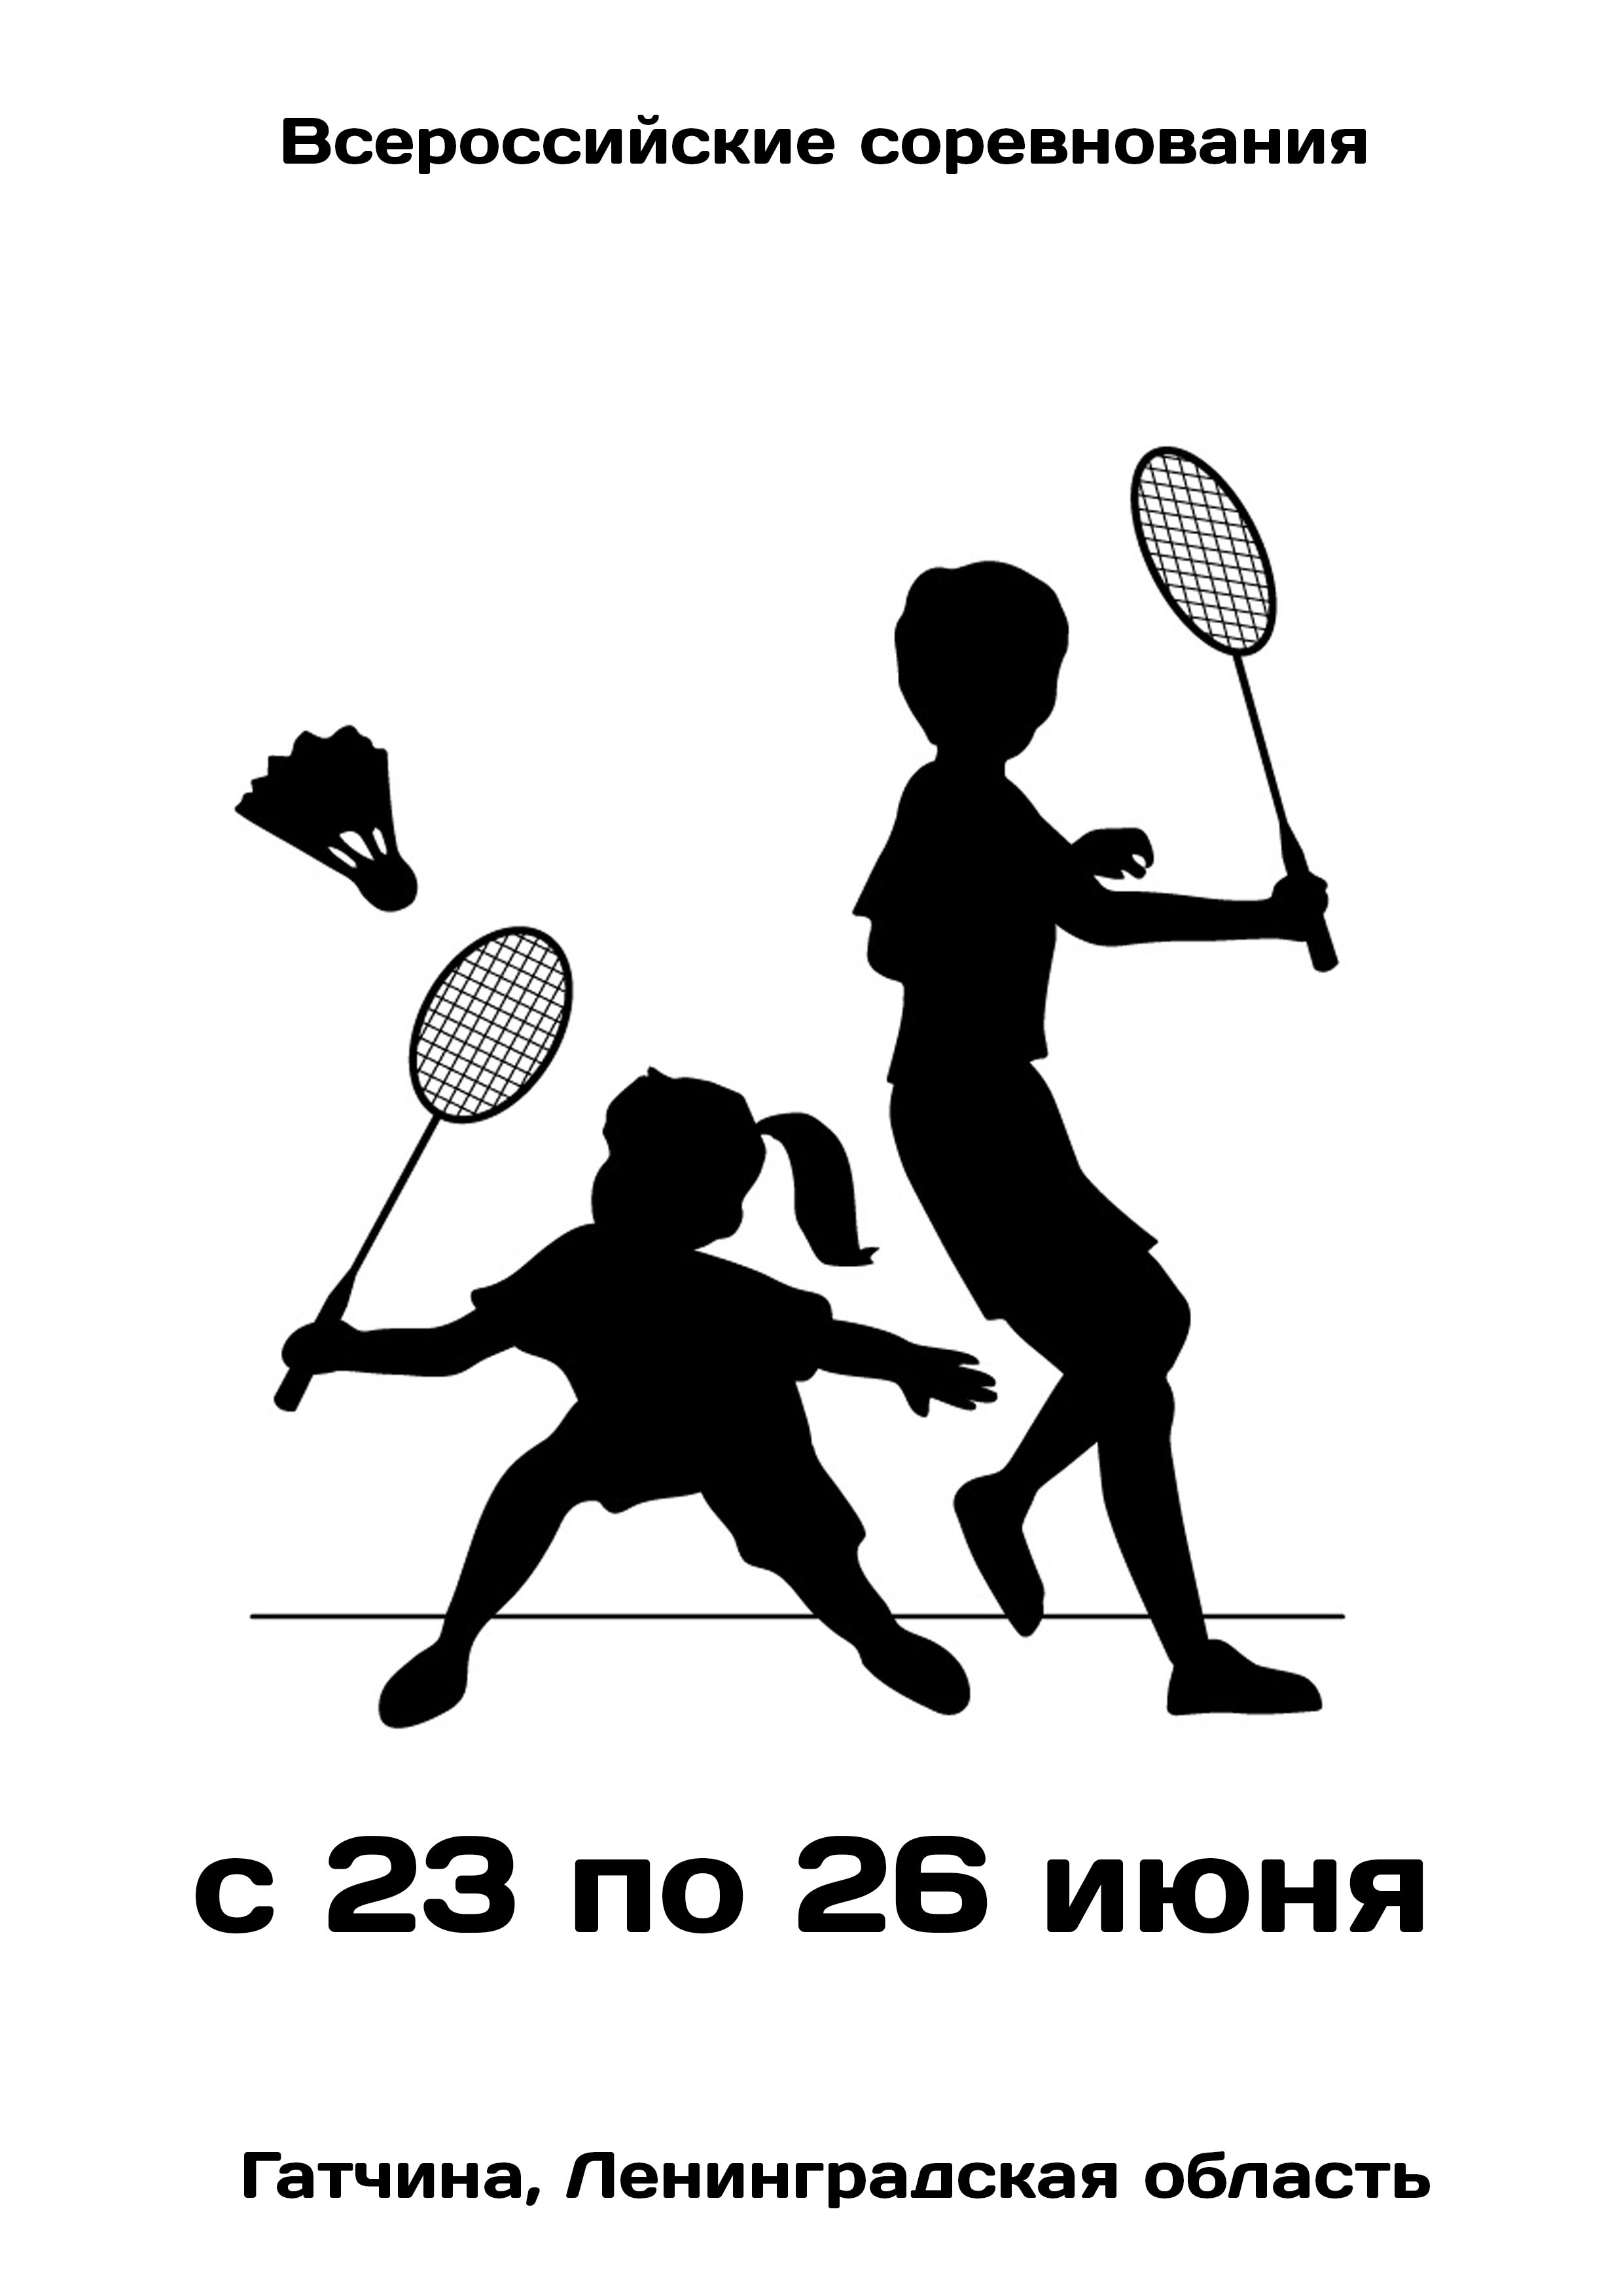 Всероссийские соревнования  по бадминтону 23  чэрвеня
 2023  год
 